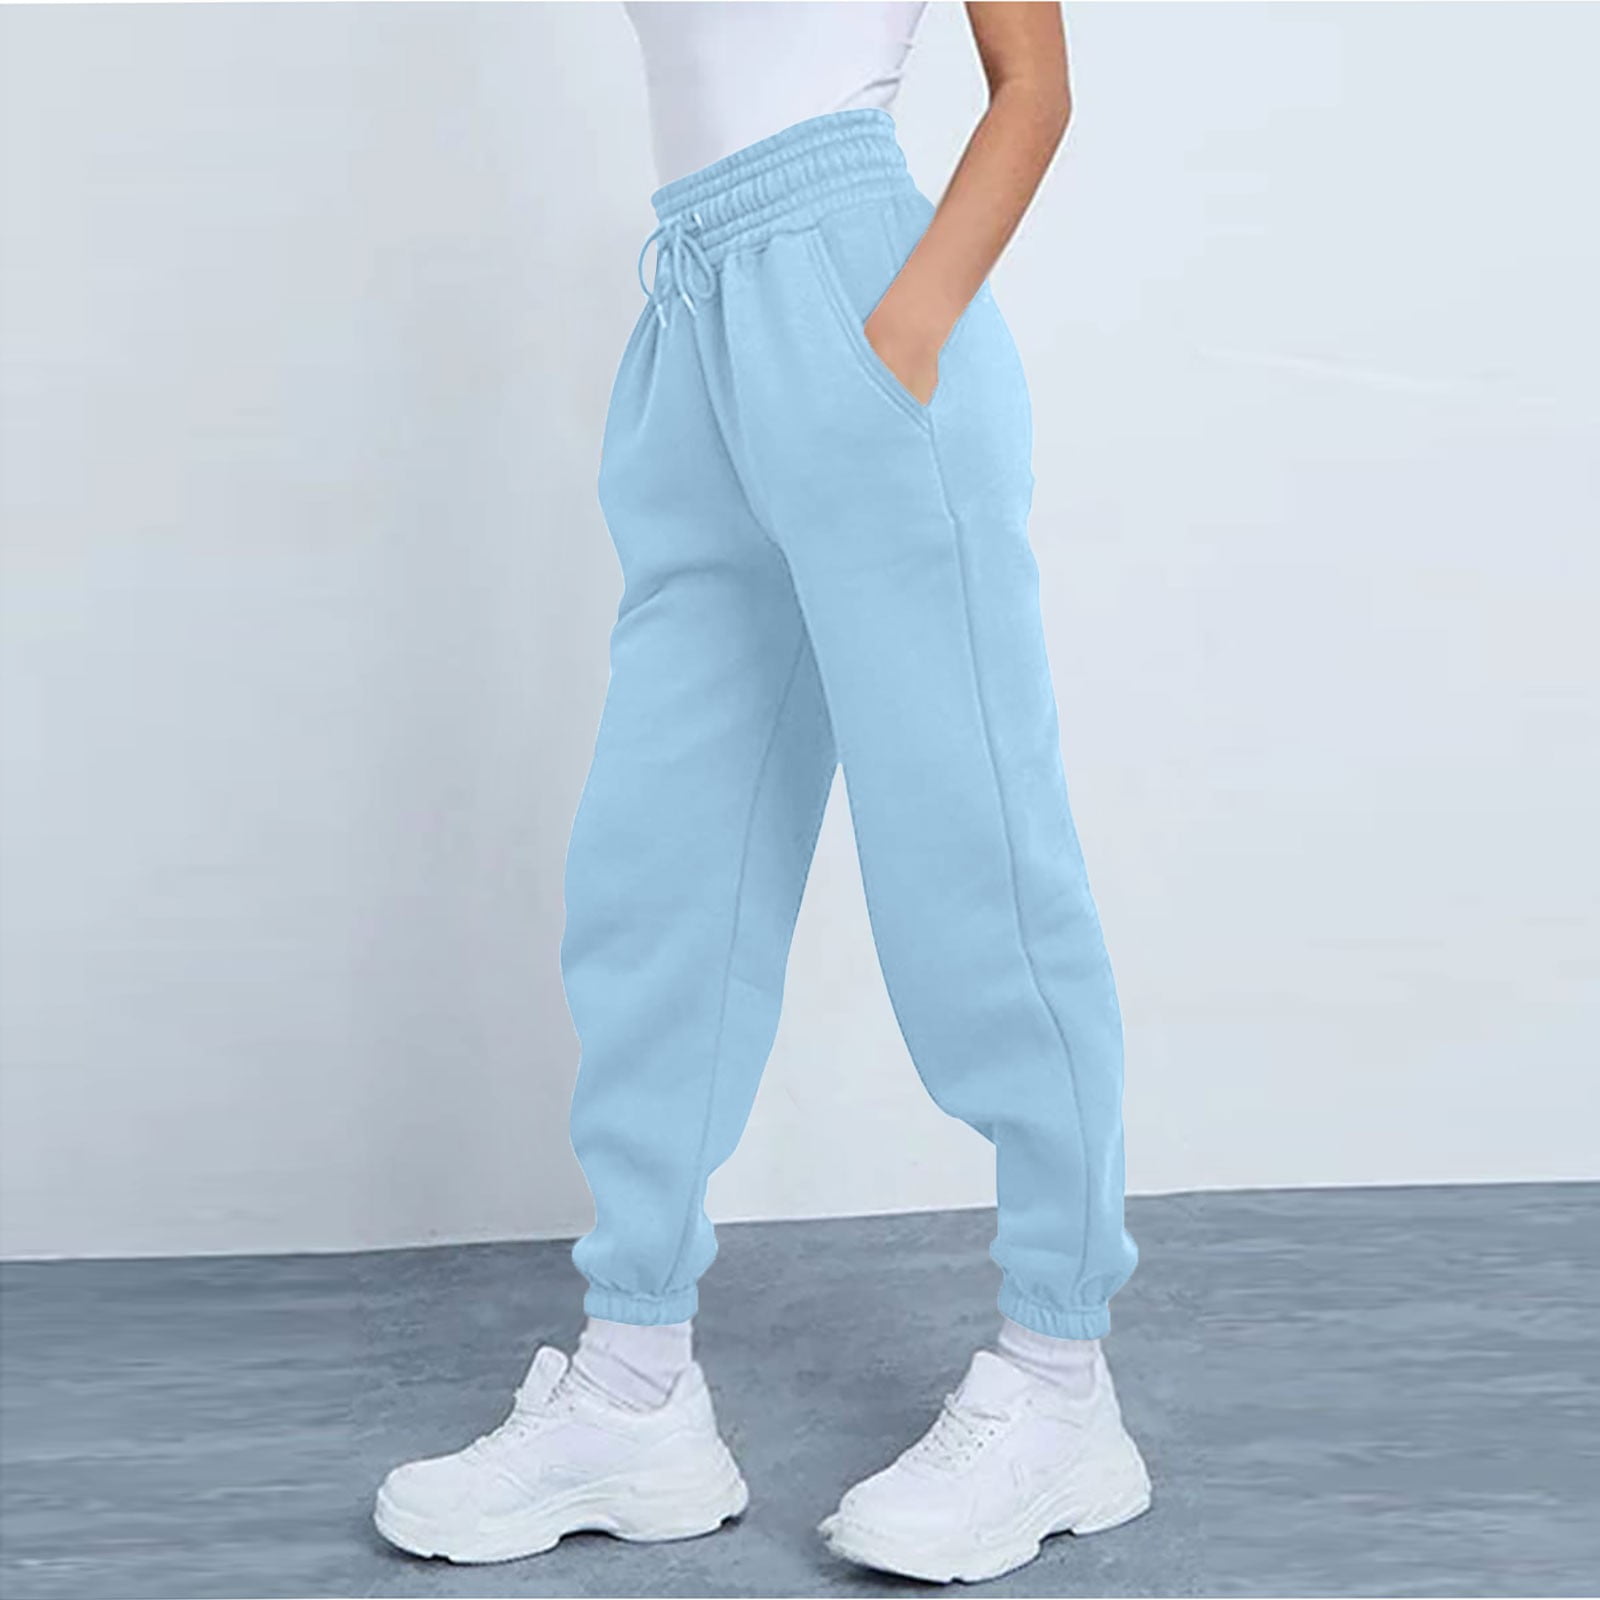 ELFINDEA Lounge Pants Women Fashion Sport Solid Color Drawstring Pocket  Casual Sweatpants Pants Light Blue XL 